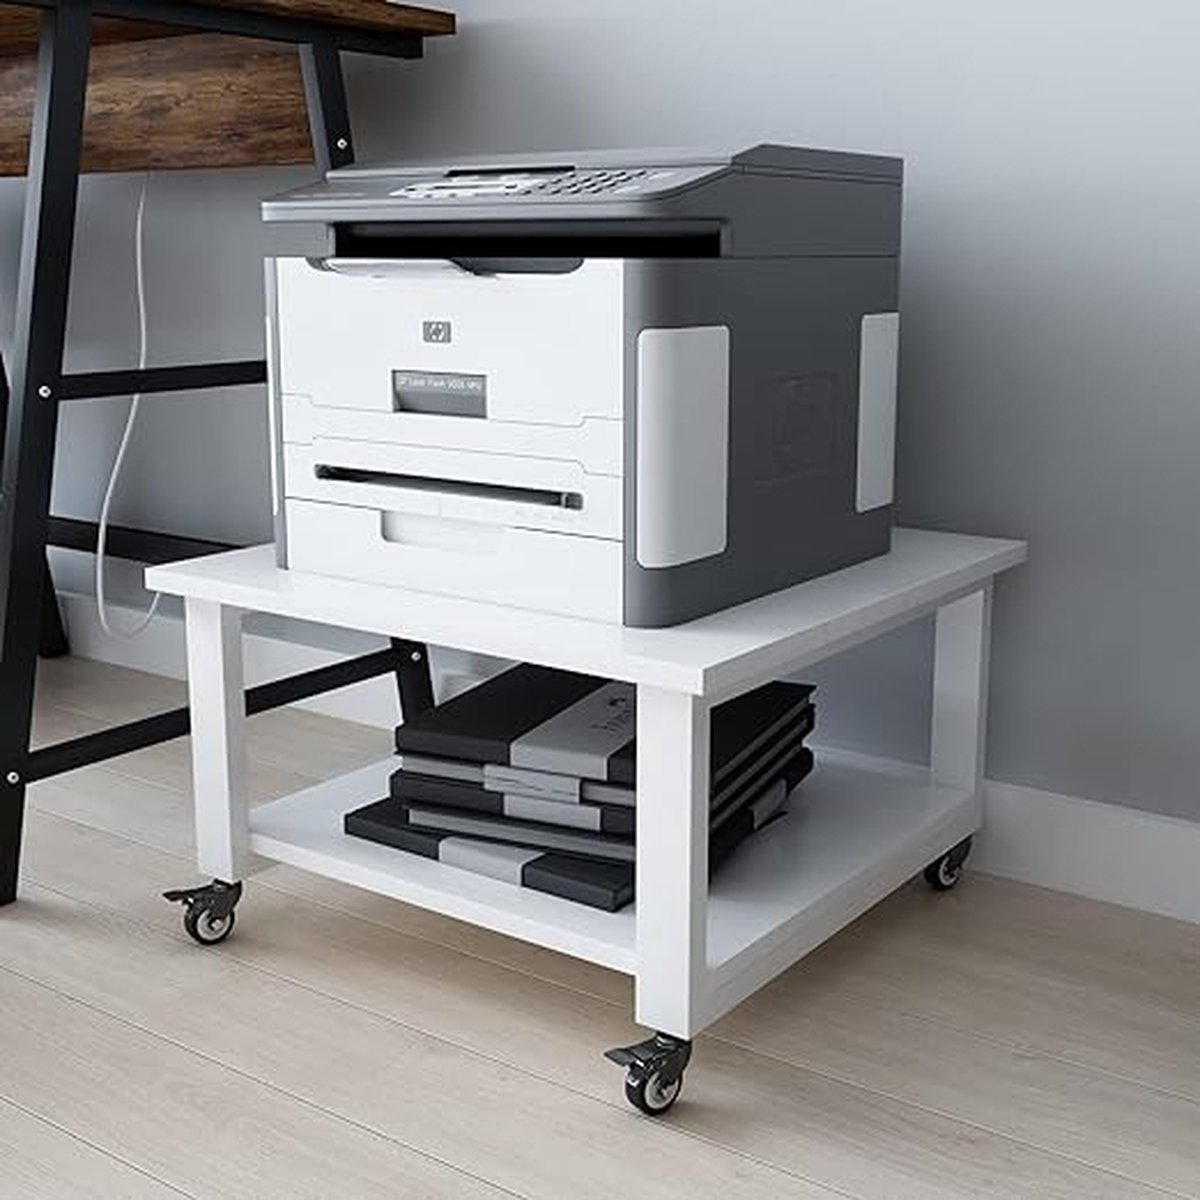 2-Tier Laser Printer Stand 50 * 50 * 30cm Grote Printer Tafel Copier Stand onder Bureau Heavy Duty Rolling Cart met Paper Storage Shelf Printer Houder op Wielen voor Home Office (Wit)